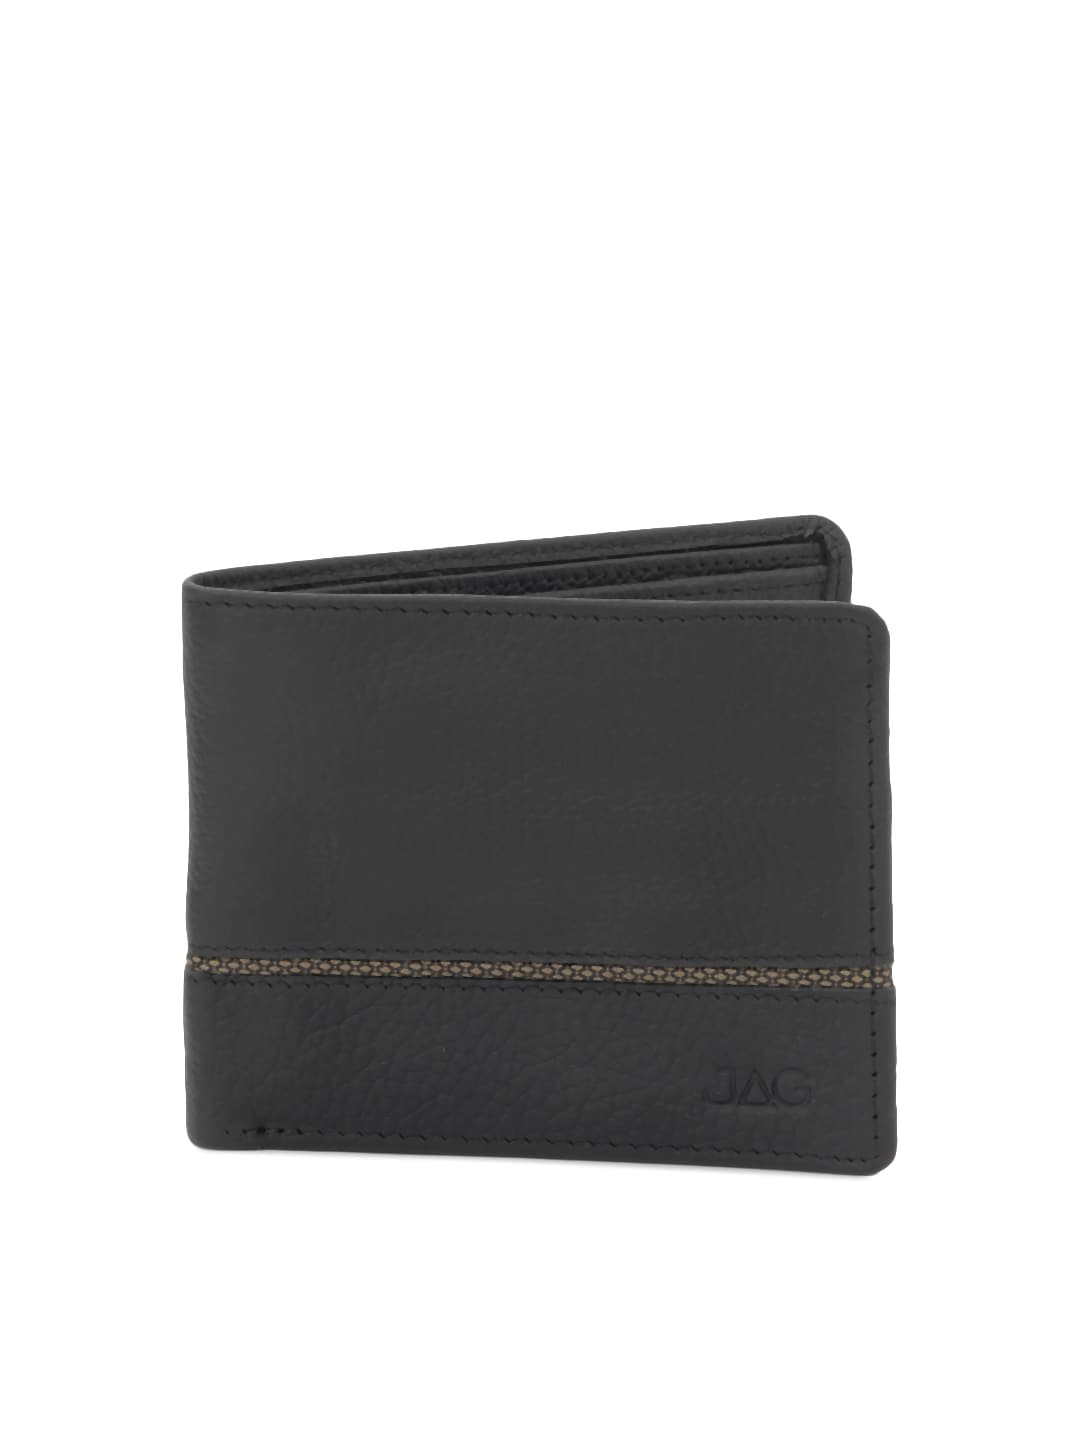 JAG Men Black Leather Wallet